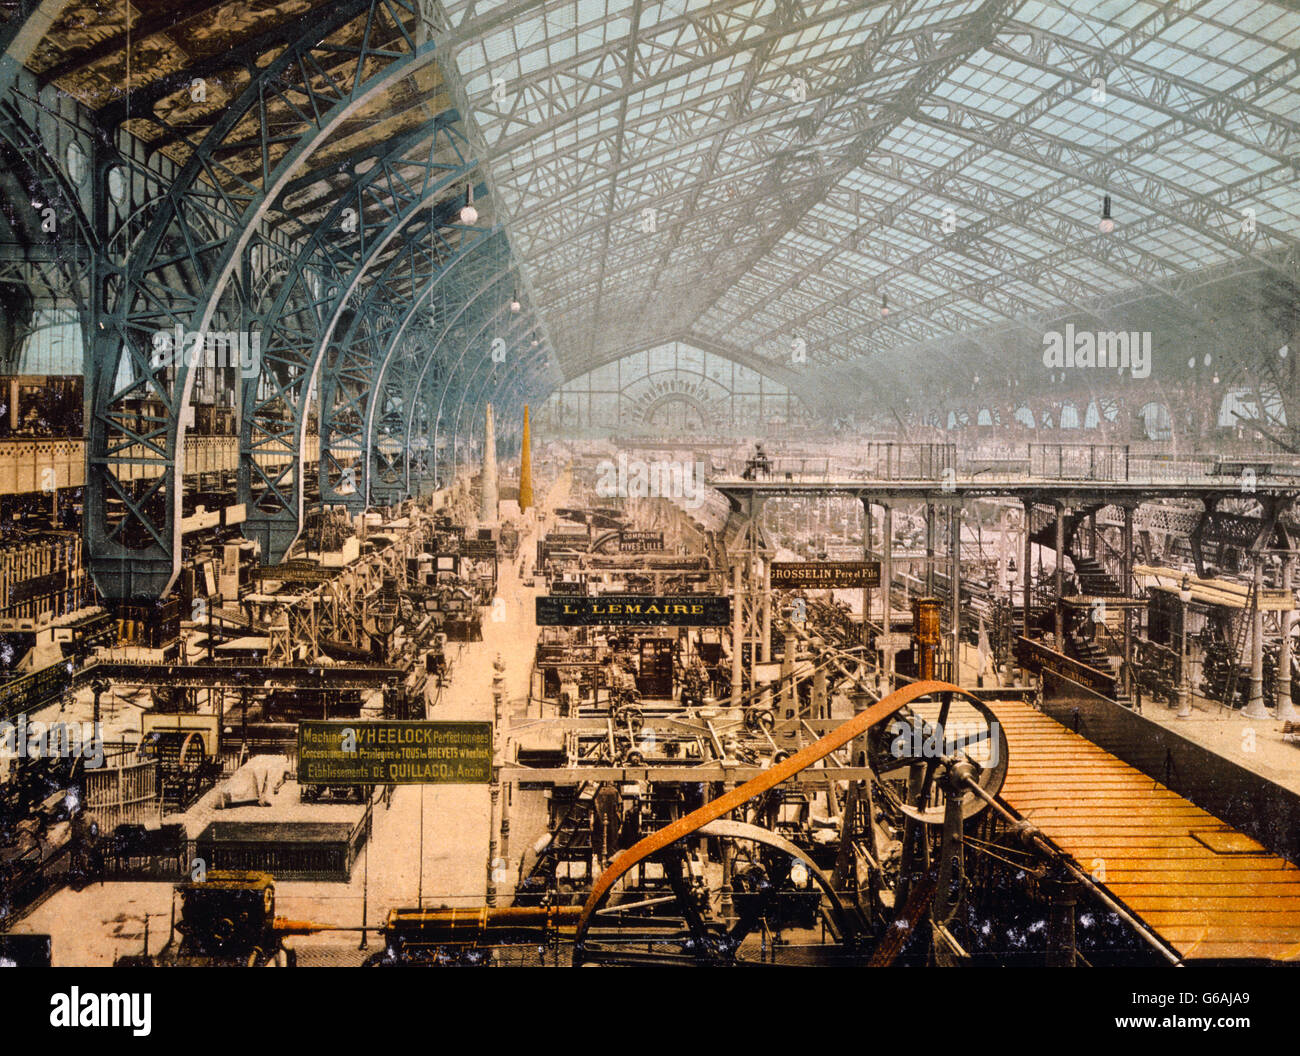 Exposition de Paris, 1889. Vue de l'intérieur de la galerie des Machines, Exposition Universelle Internationale de 1889, Paris, France. Banque D'Images